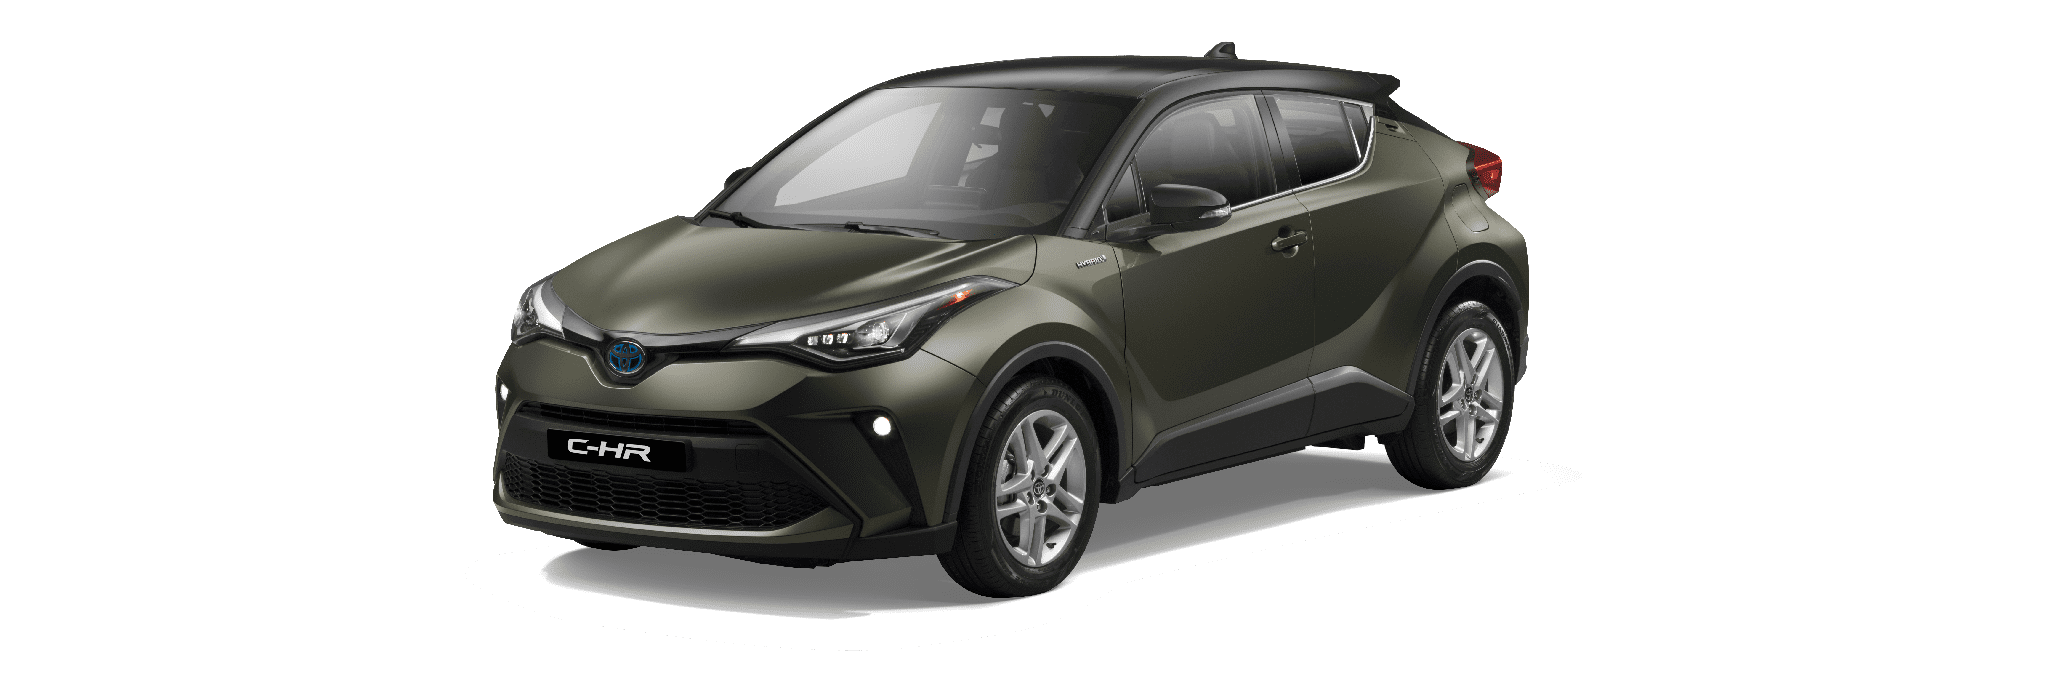 Toyota C-HR 2020 | Toyota Saudi Arabia - ALJ